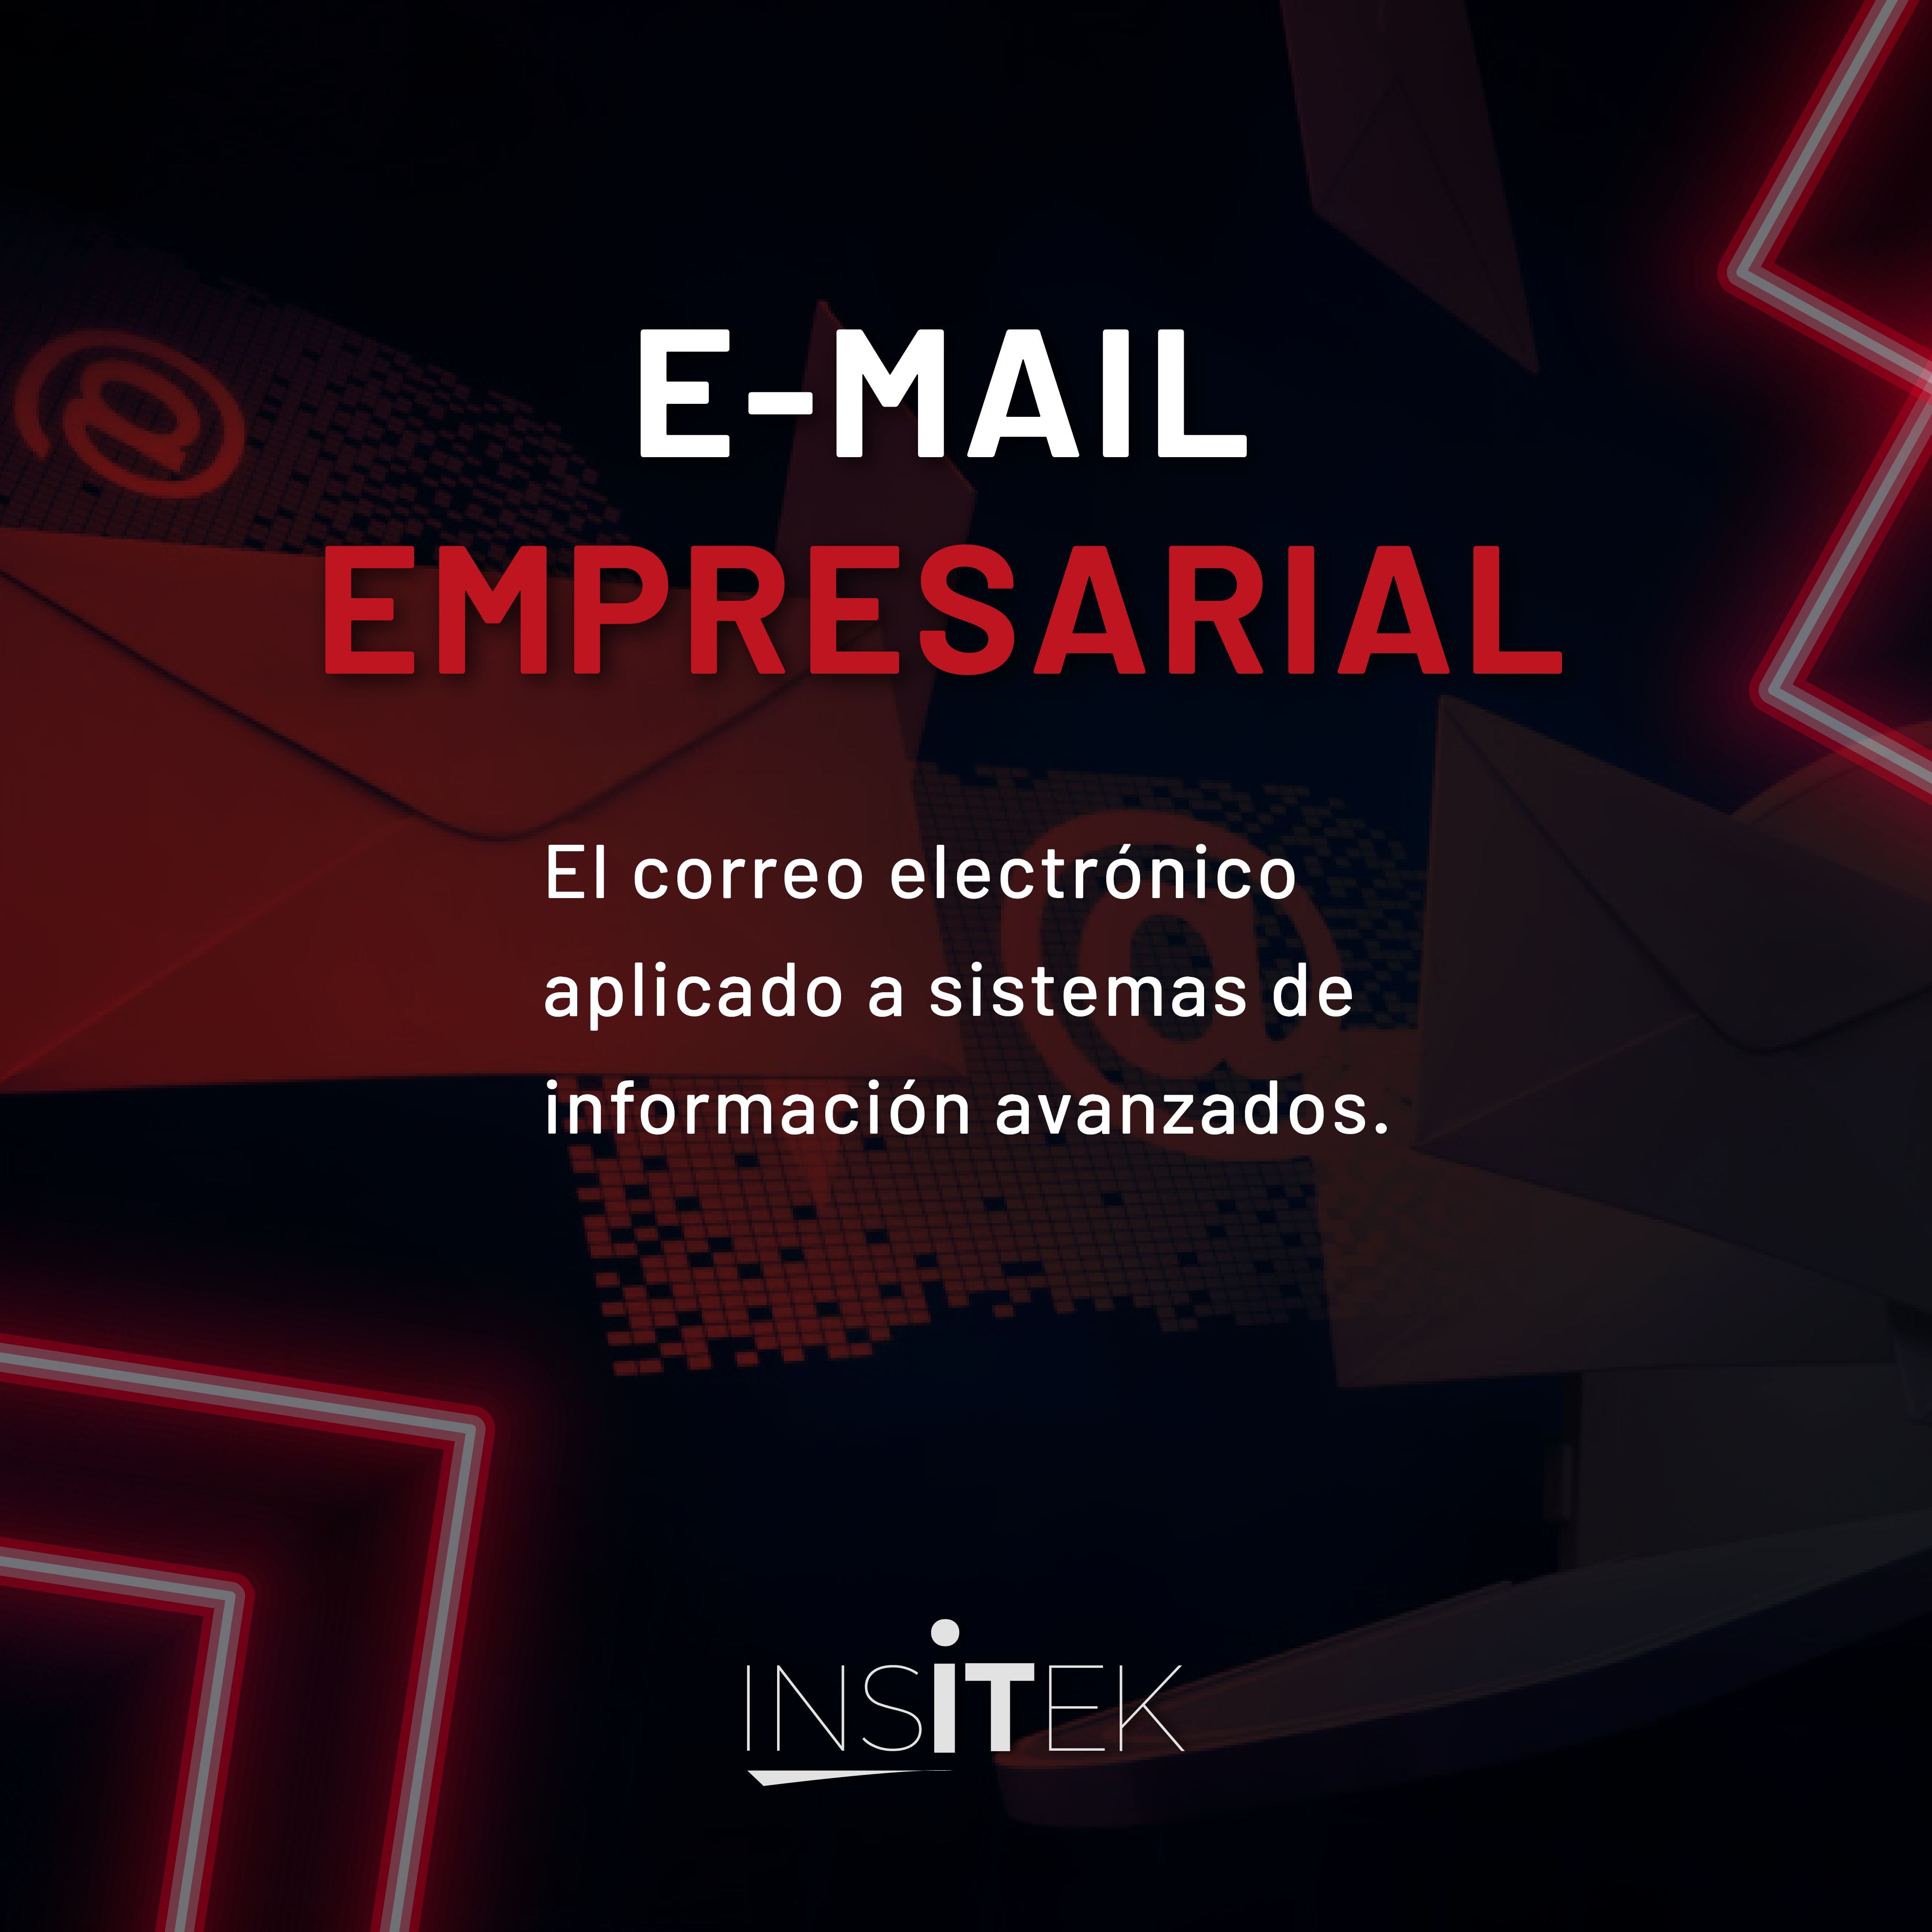 E-MAIL EMPRESARIAL